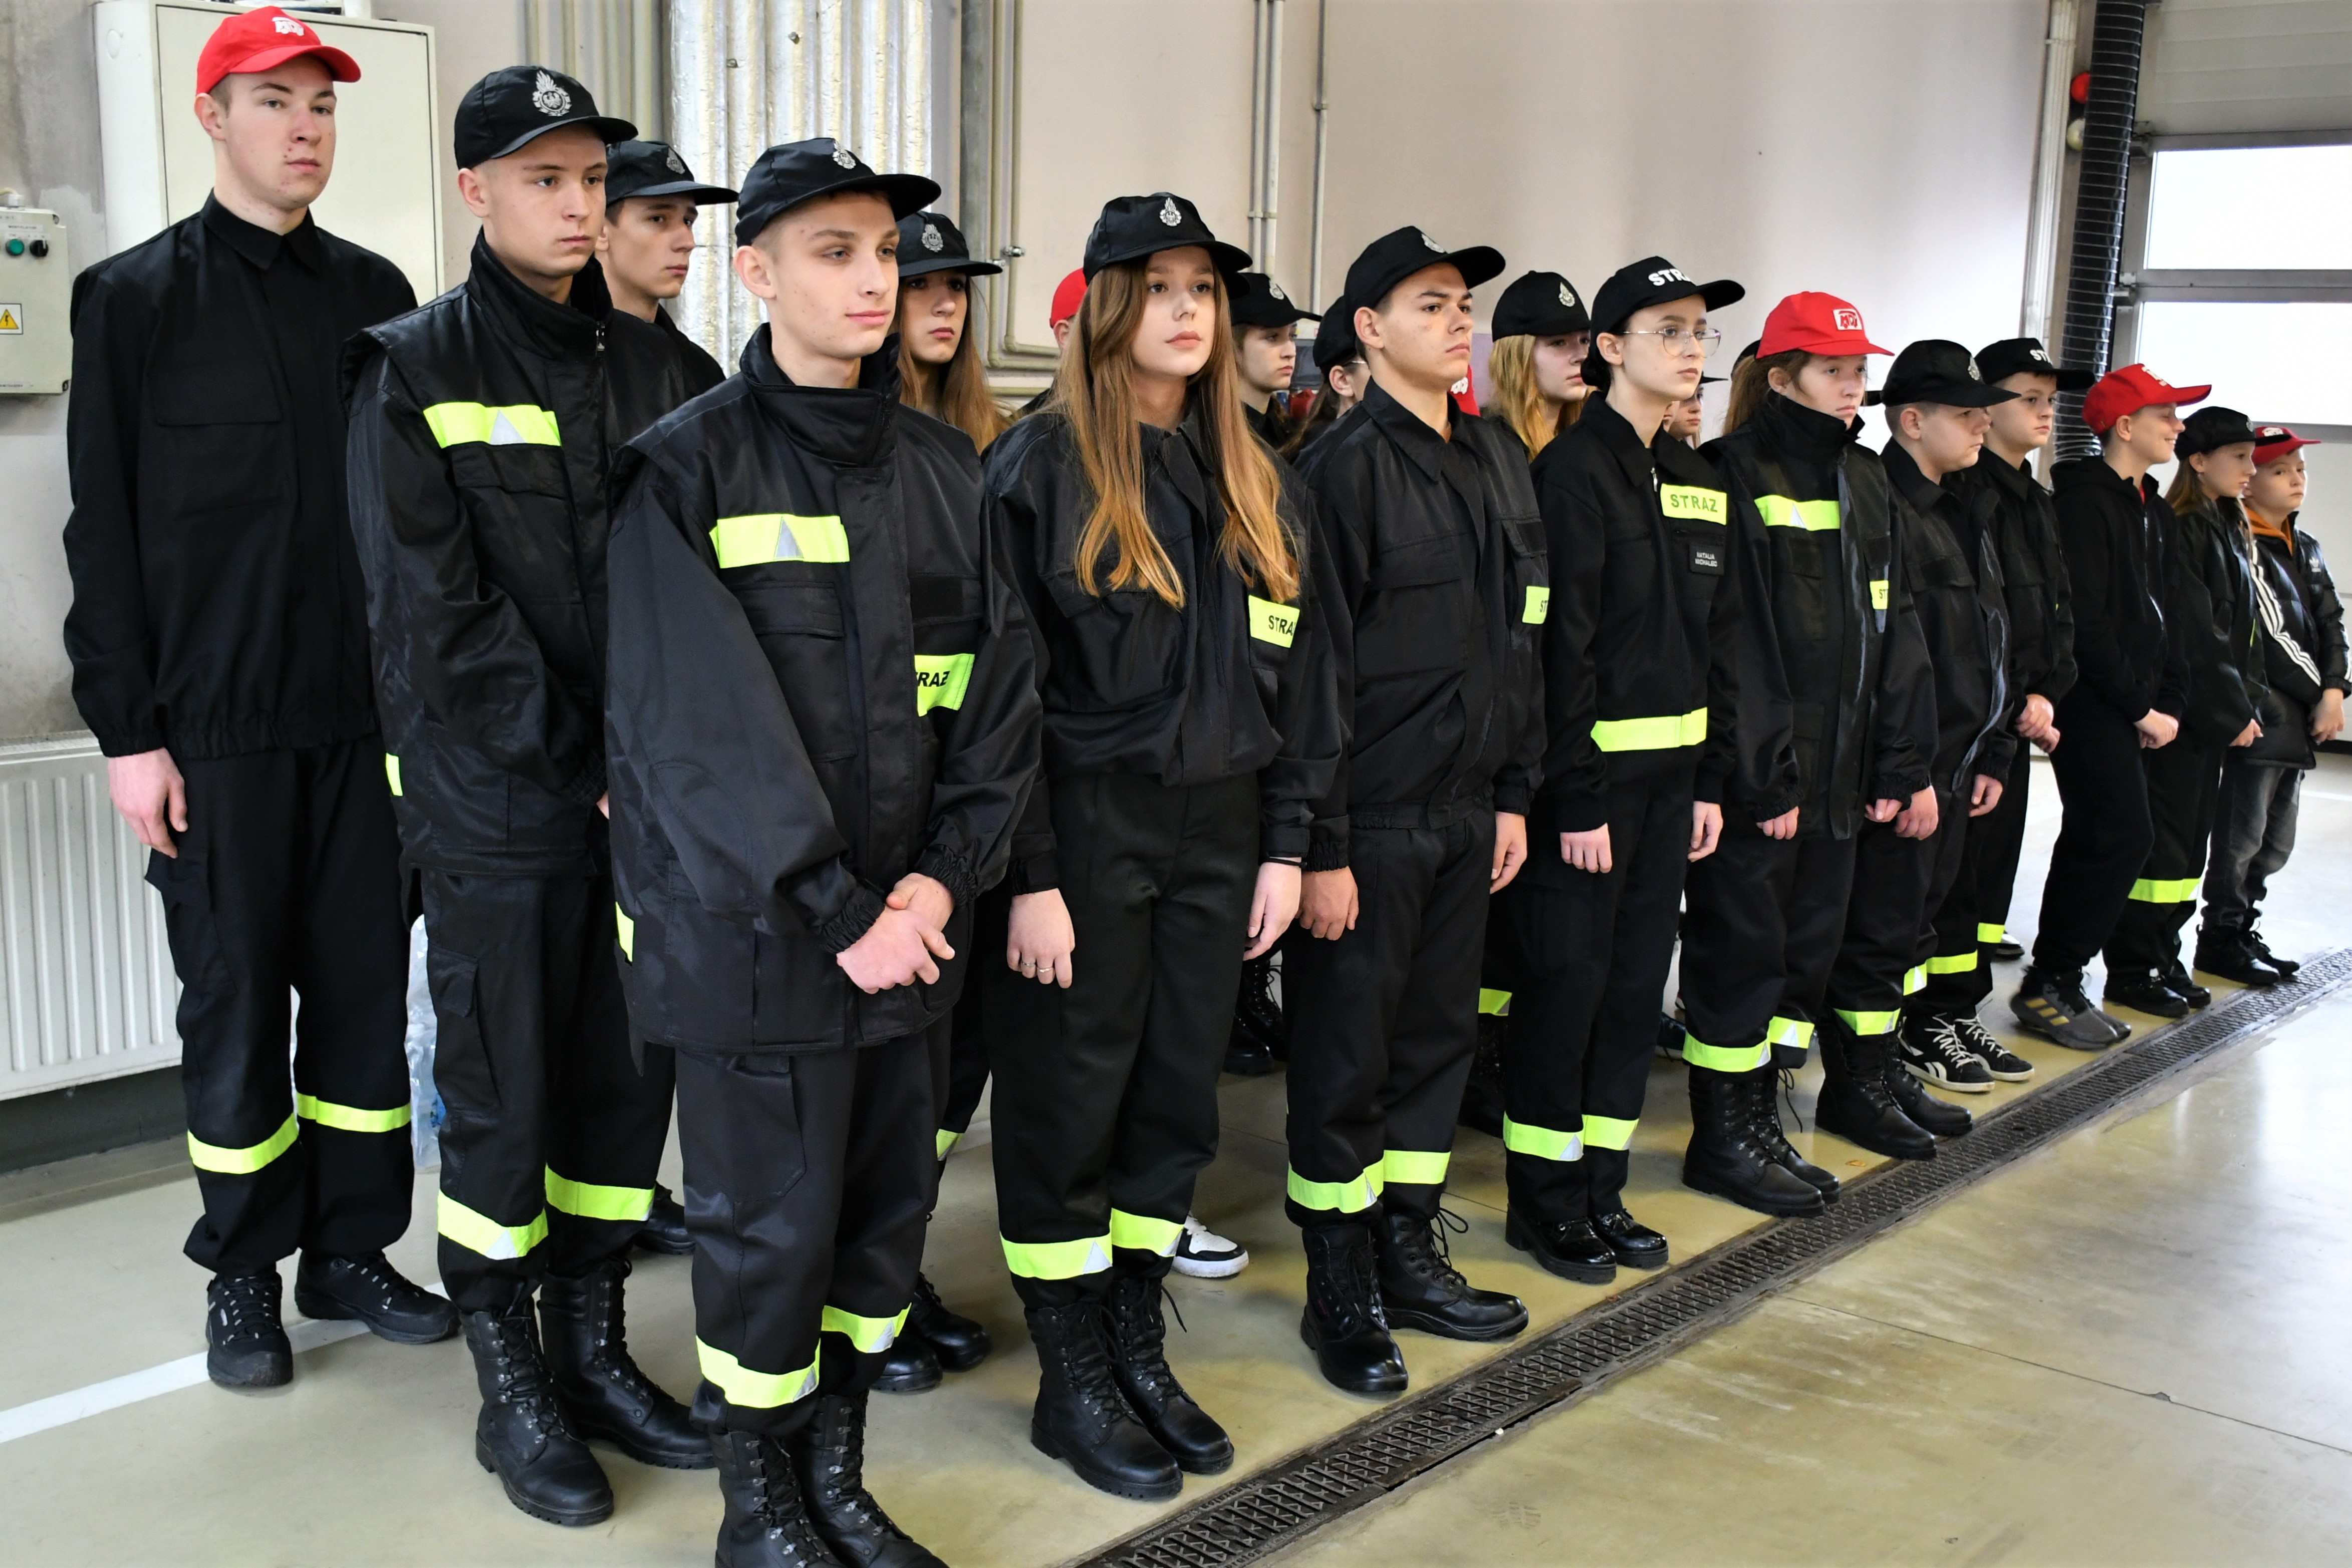 Uroczyste wręczenie promes dla Młodzieżowych Drużyn Pożarniczych z terenu powiatu radomskiego